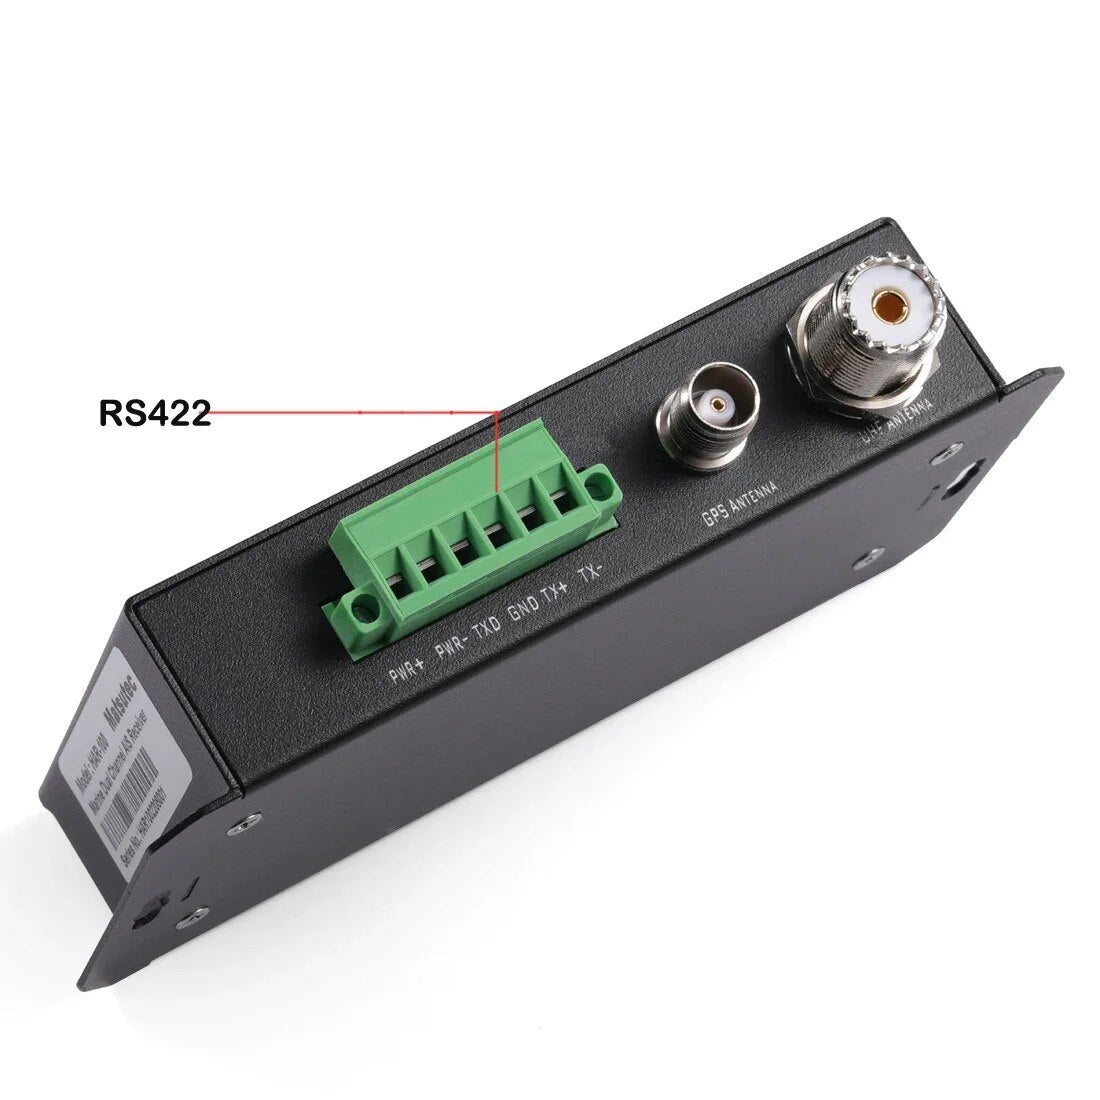 Matsutec HAR-100 AIS Receiver Dual Channel AIS Class A and Class B Receiver With RS232/ RS422 GPS receiver Class AIS Receiver